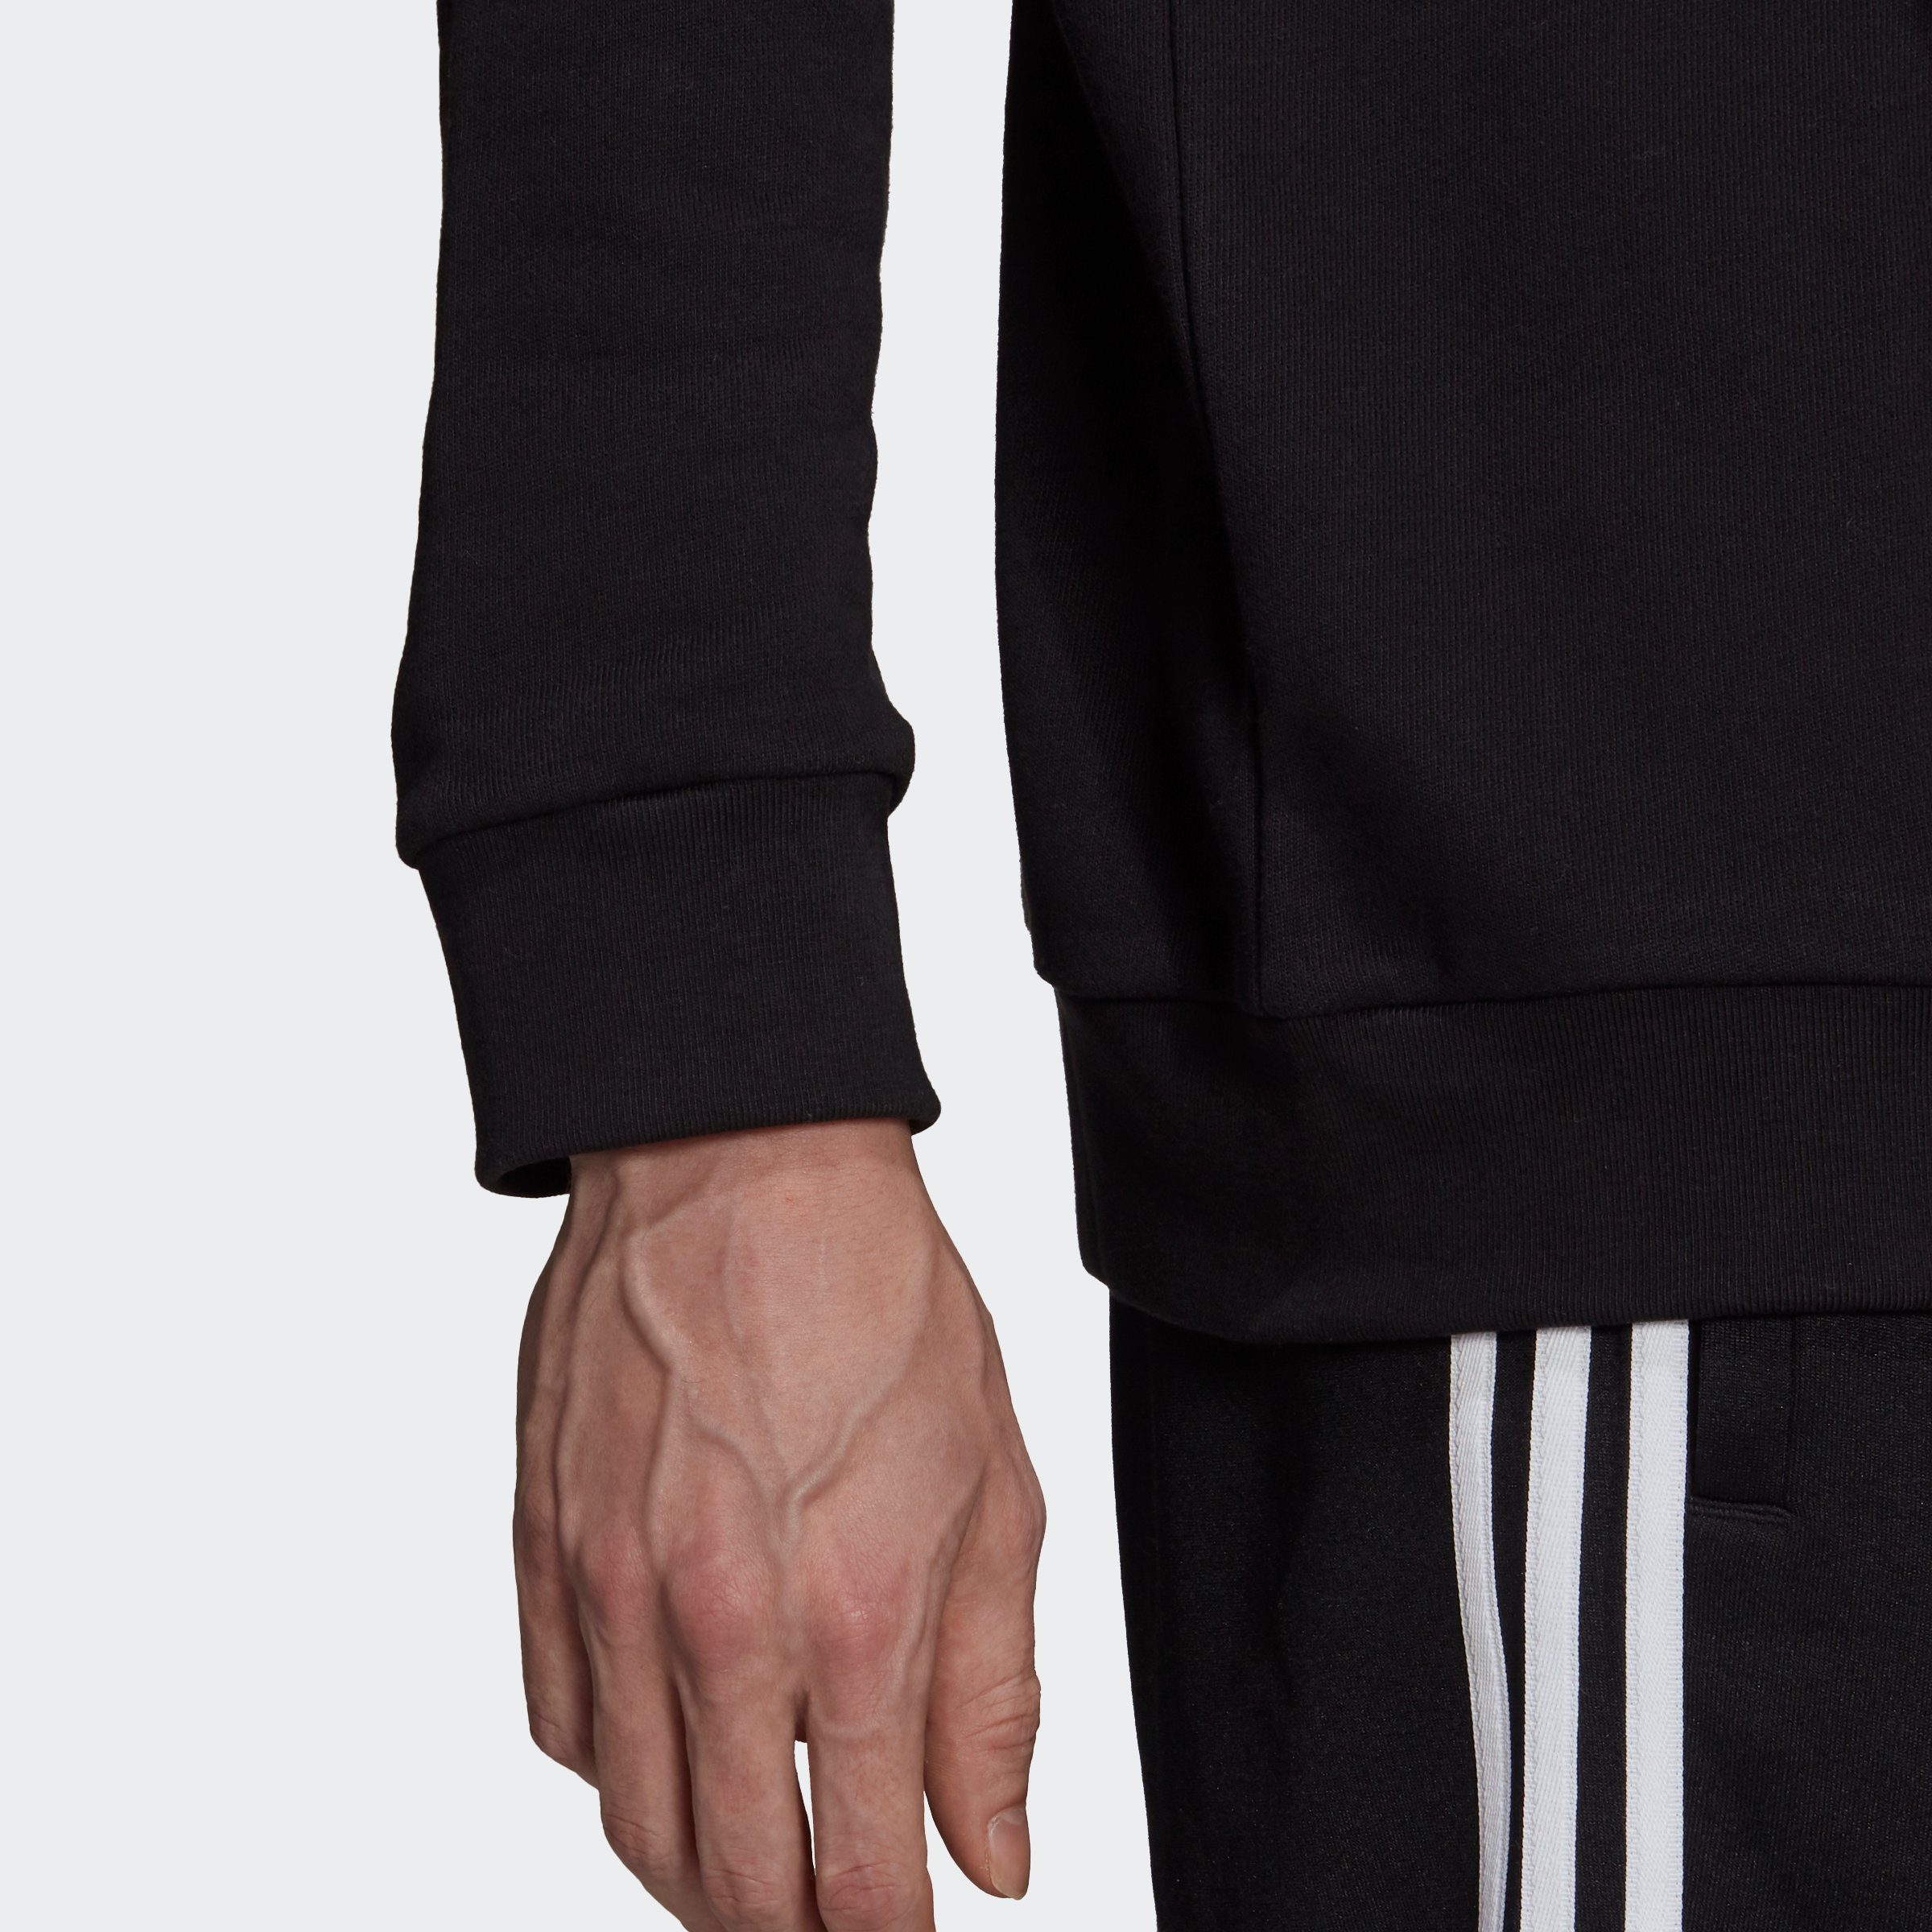 ADICOLOR BLACK/WHITE Originals TREFOIL CLASSICS Sweatshirt adidas